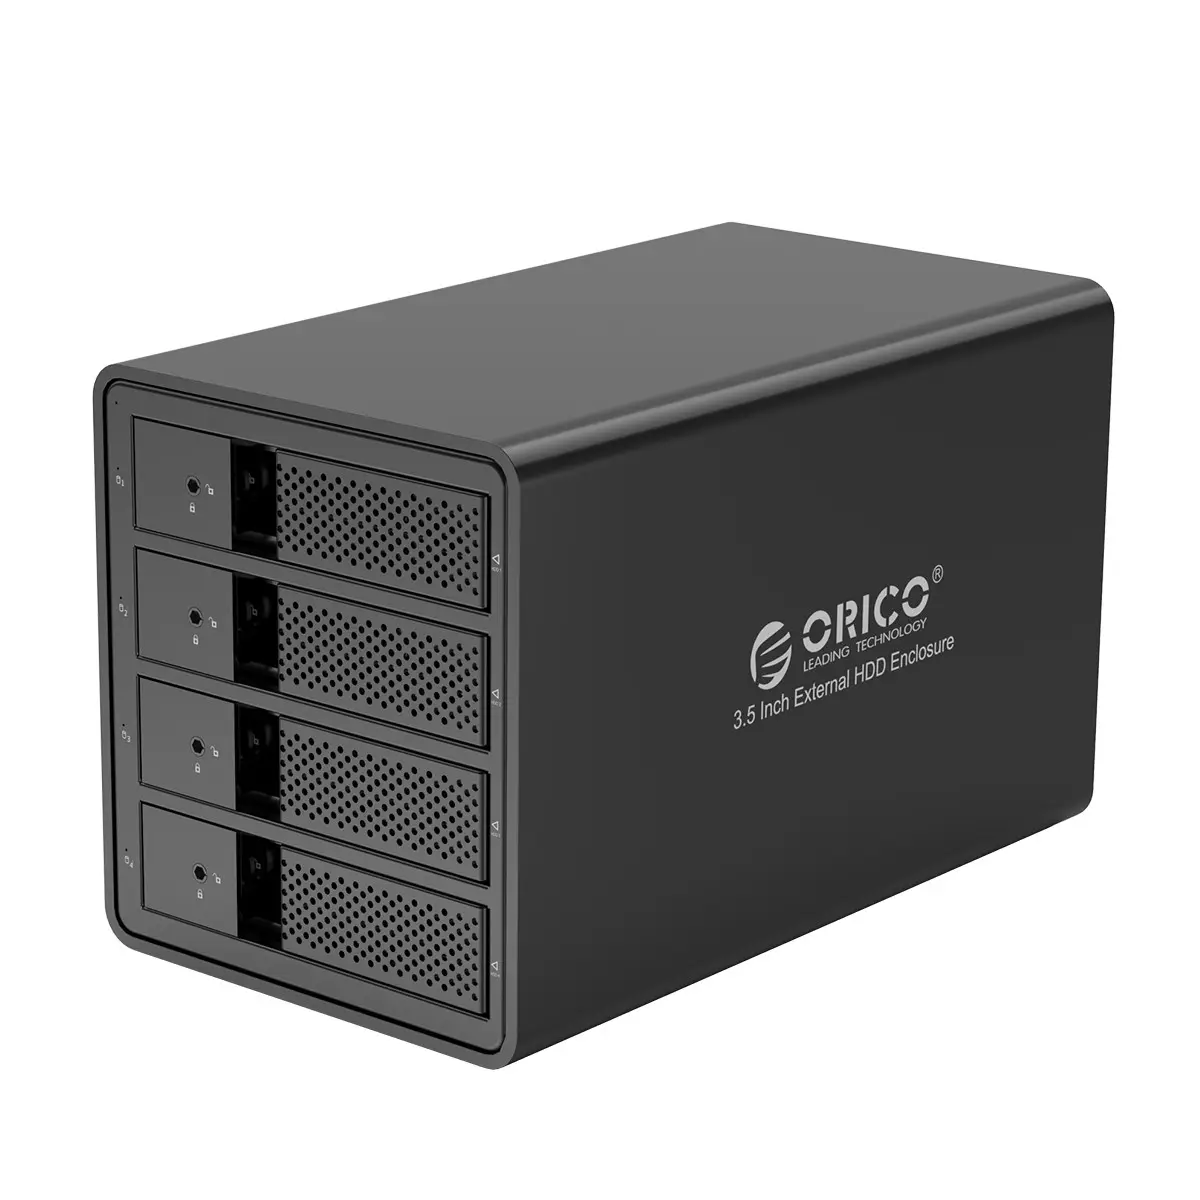 ORICO dört disk disk kabine 2.5/3.5 inç sata masaüstü ssd harici disk kutusu bağlar çift çip 150W dahili güç kaynağı